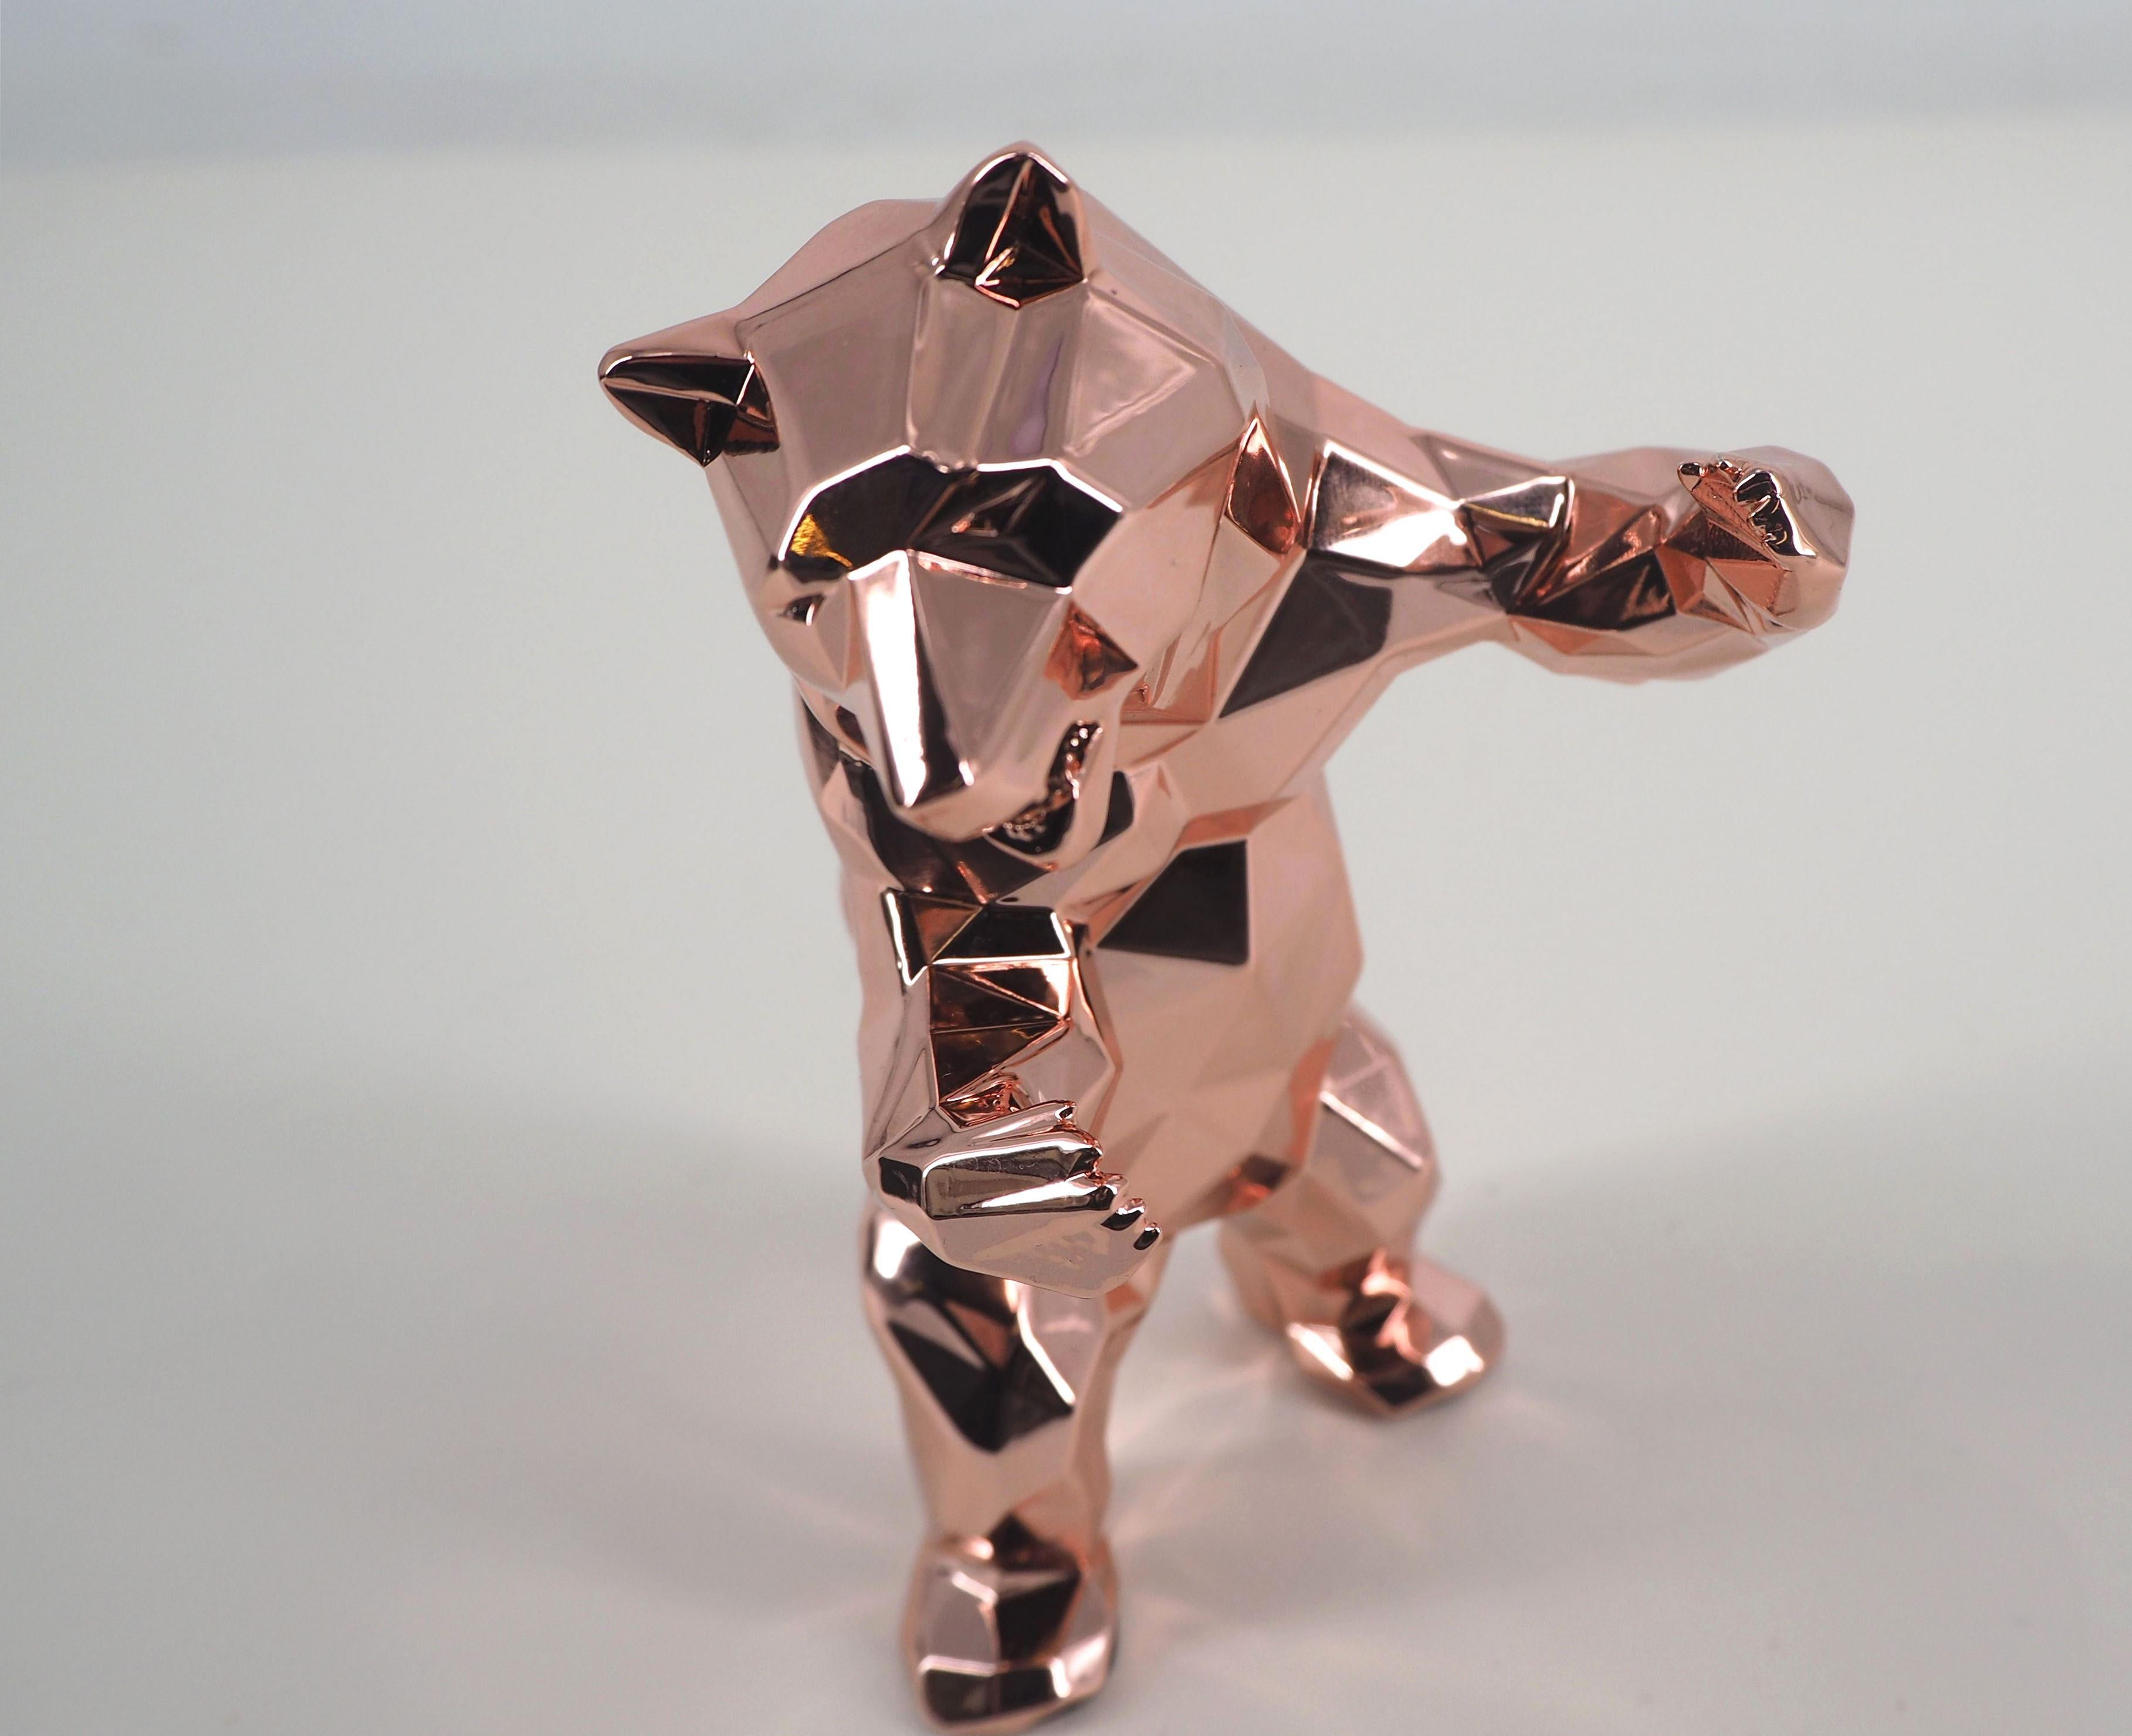 L'ours debout (édition rose or) - Sculpture dans sa boîte d'origine avec manteau d'artiste - Gris Figurative Sculpture par Richard Orlinski